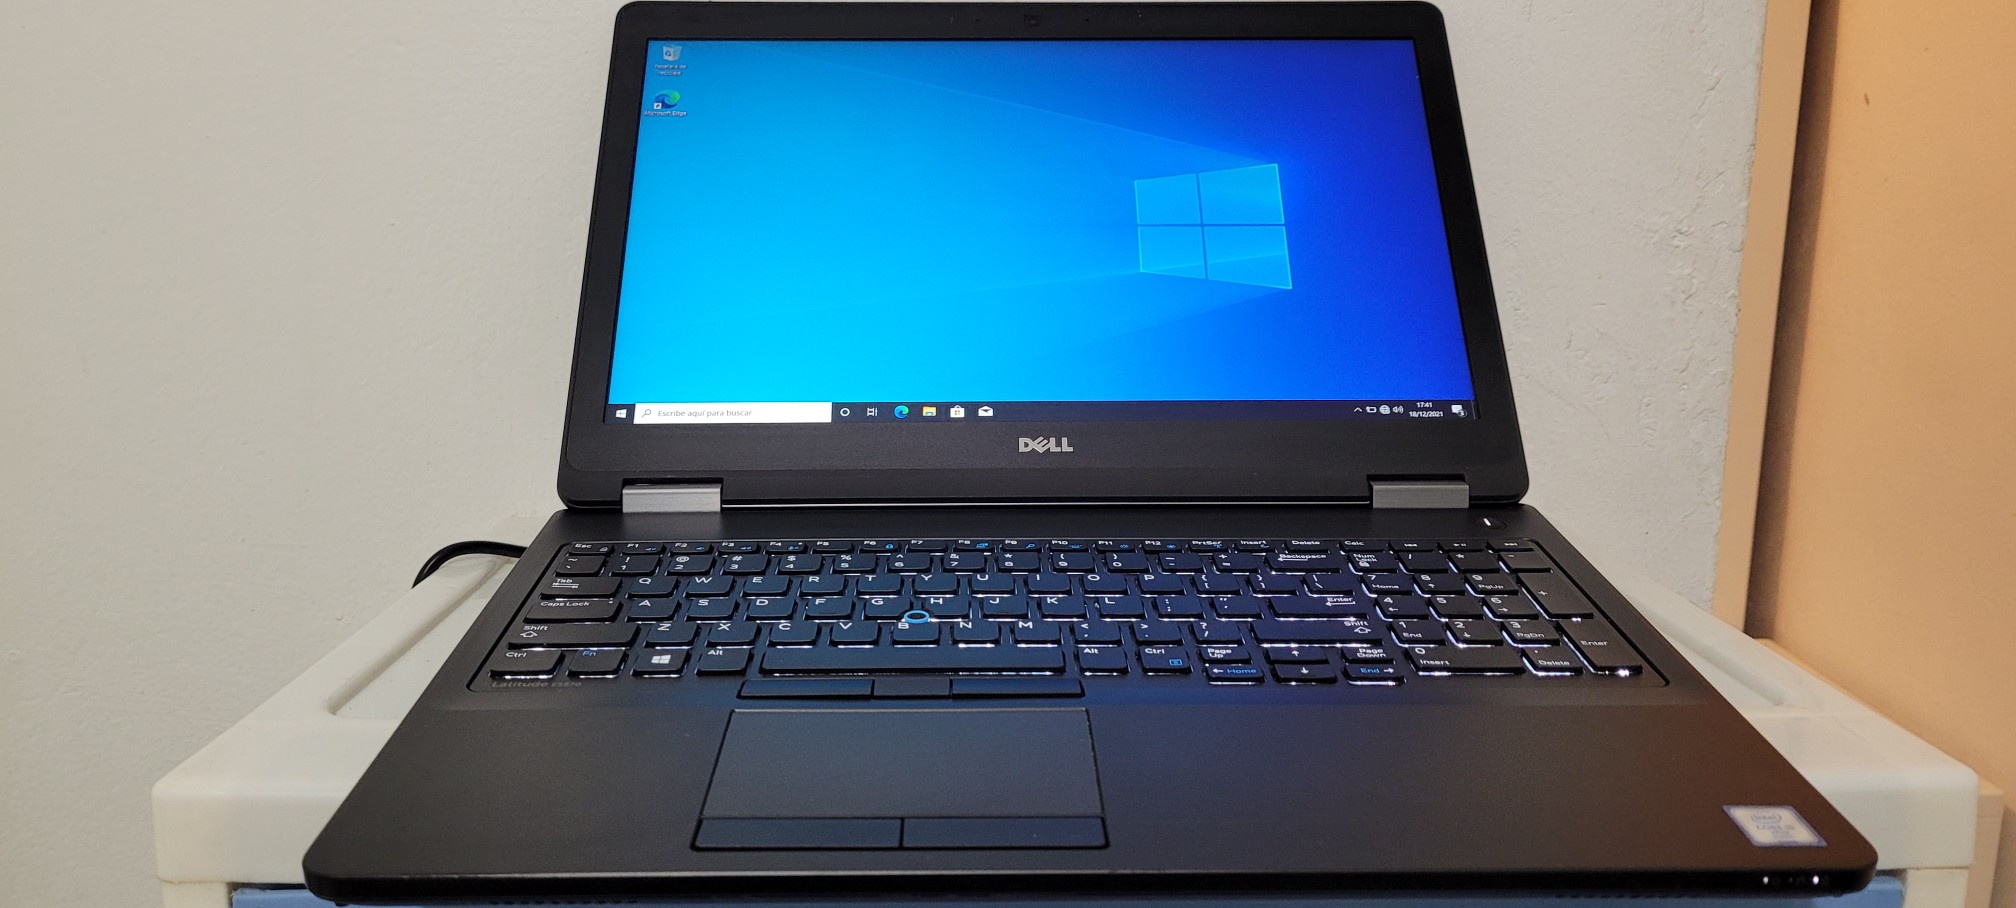 computadoras y laptops - Dell 5570 17 Pulg Core i5 6ta Ram 8gb Disco 128gb Y 500gb hdmi full